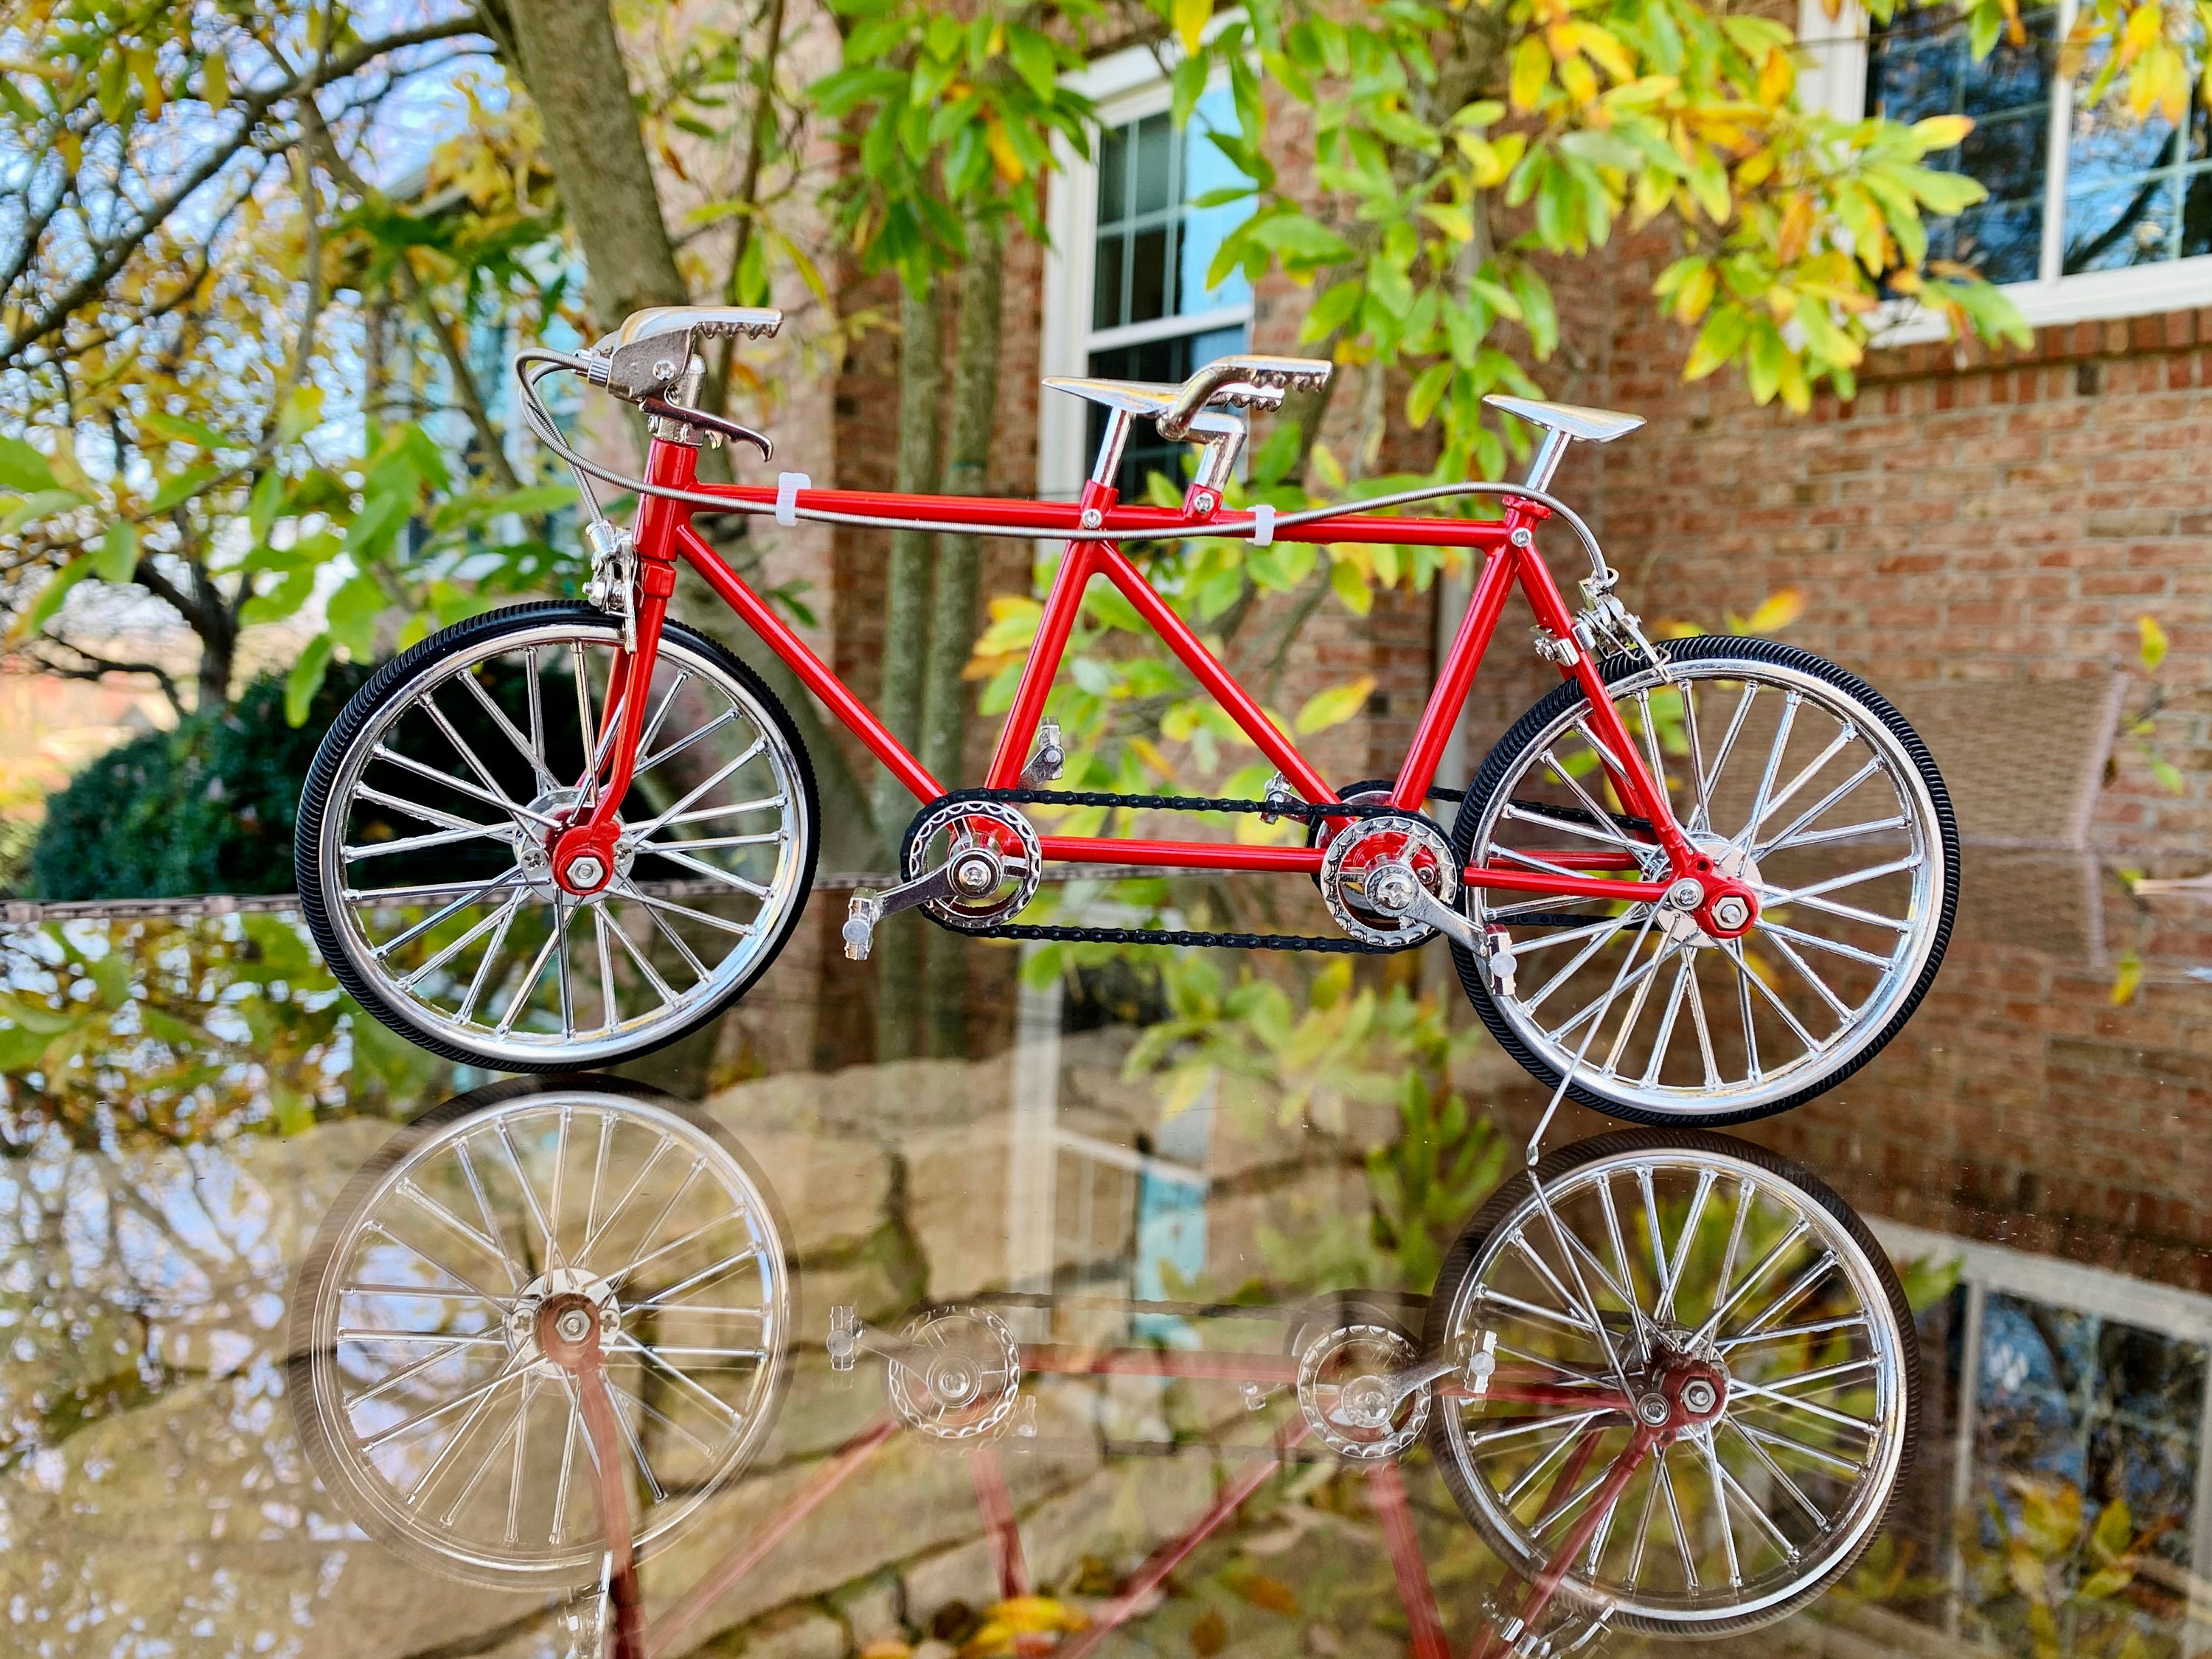 Réplique de vélo tandem à l'échelle 1:10 modèle de vélo collection jouet  cadeau